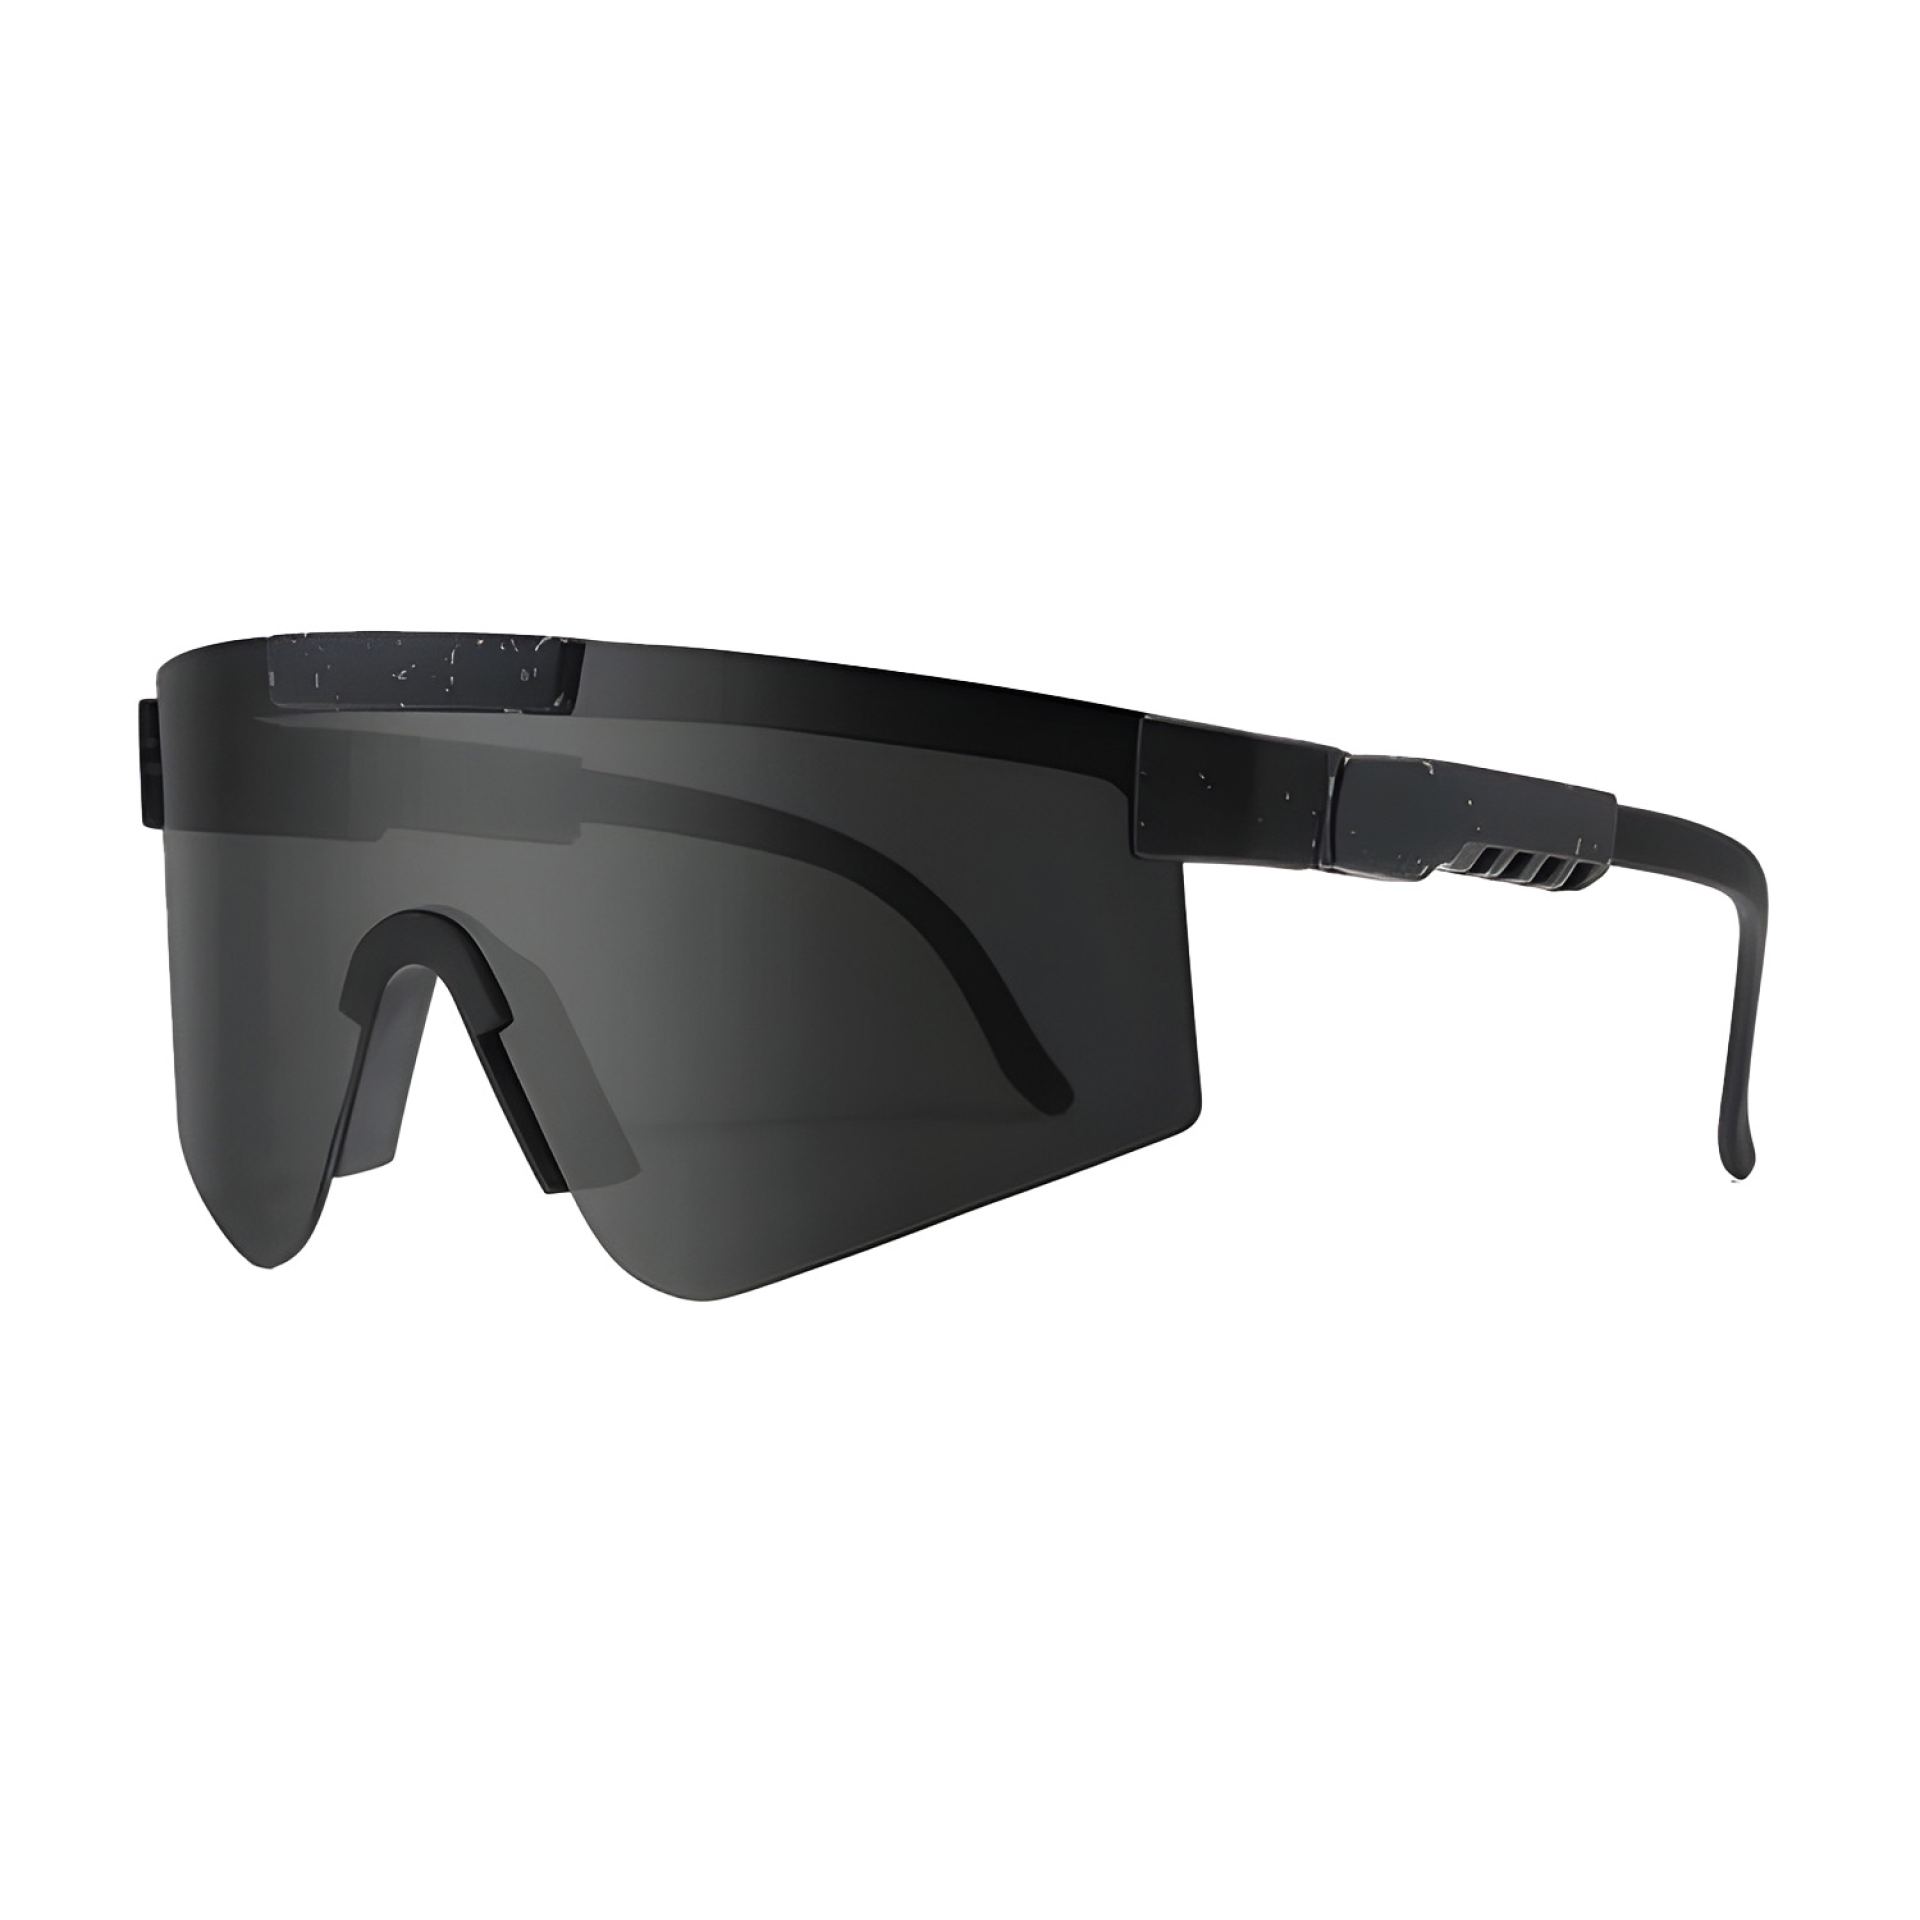 Rave bril sport zonnebril zwart/zilver